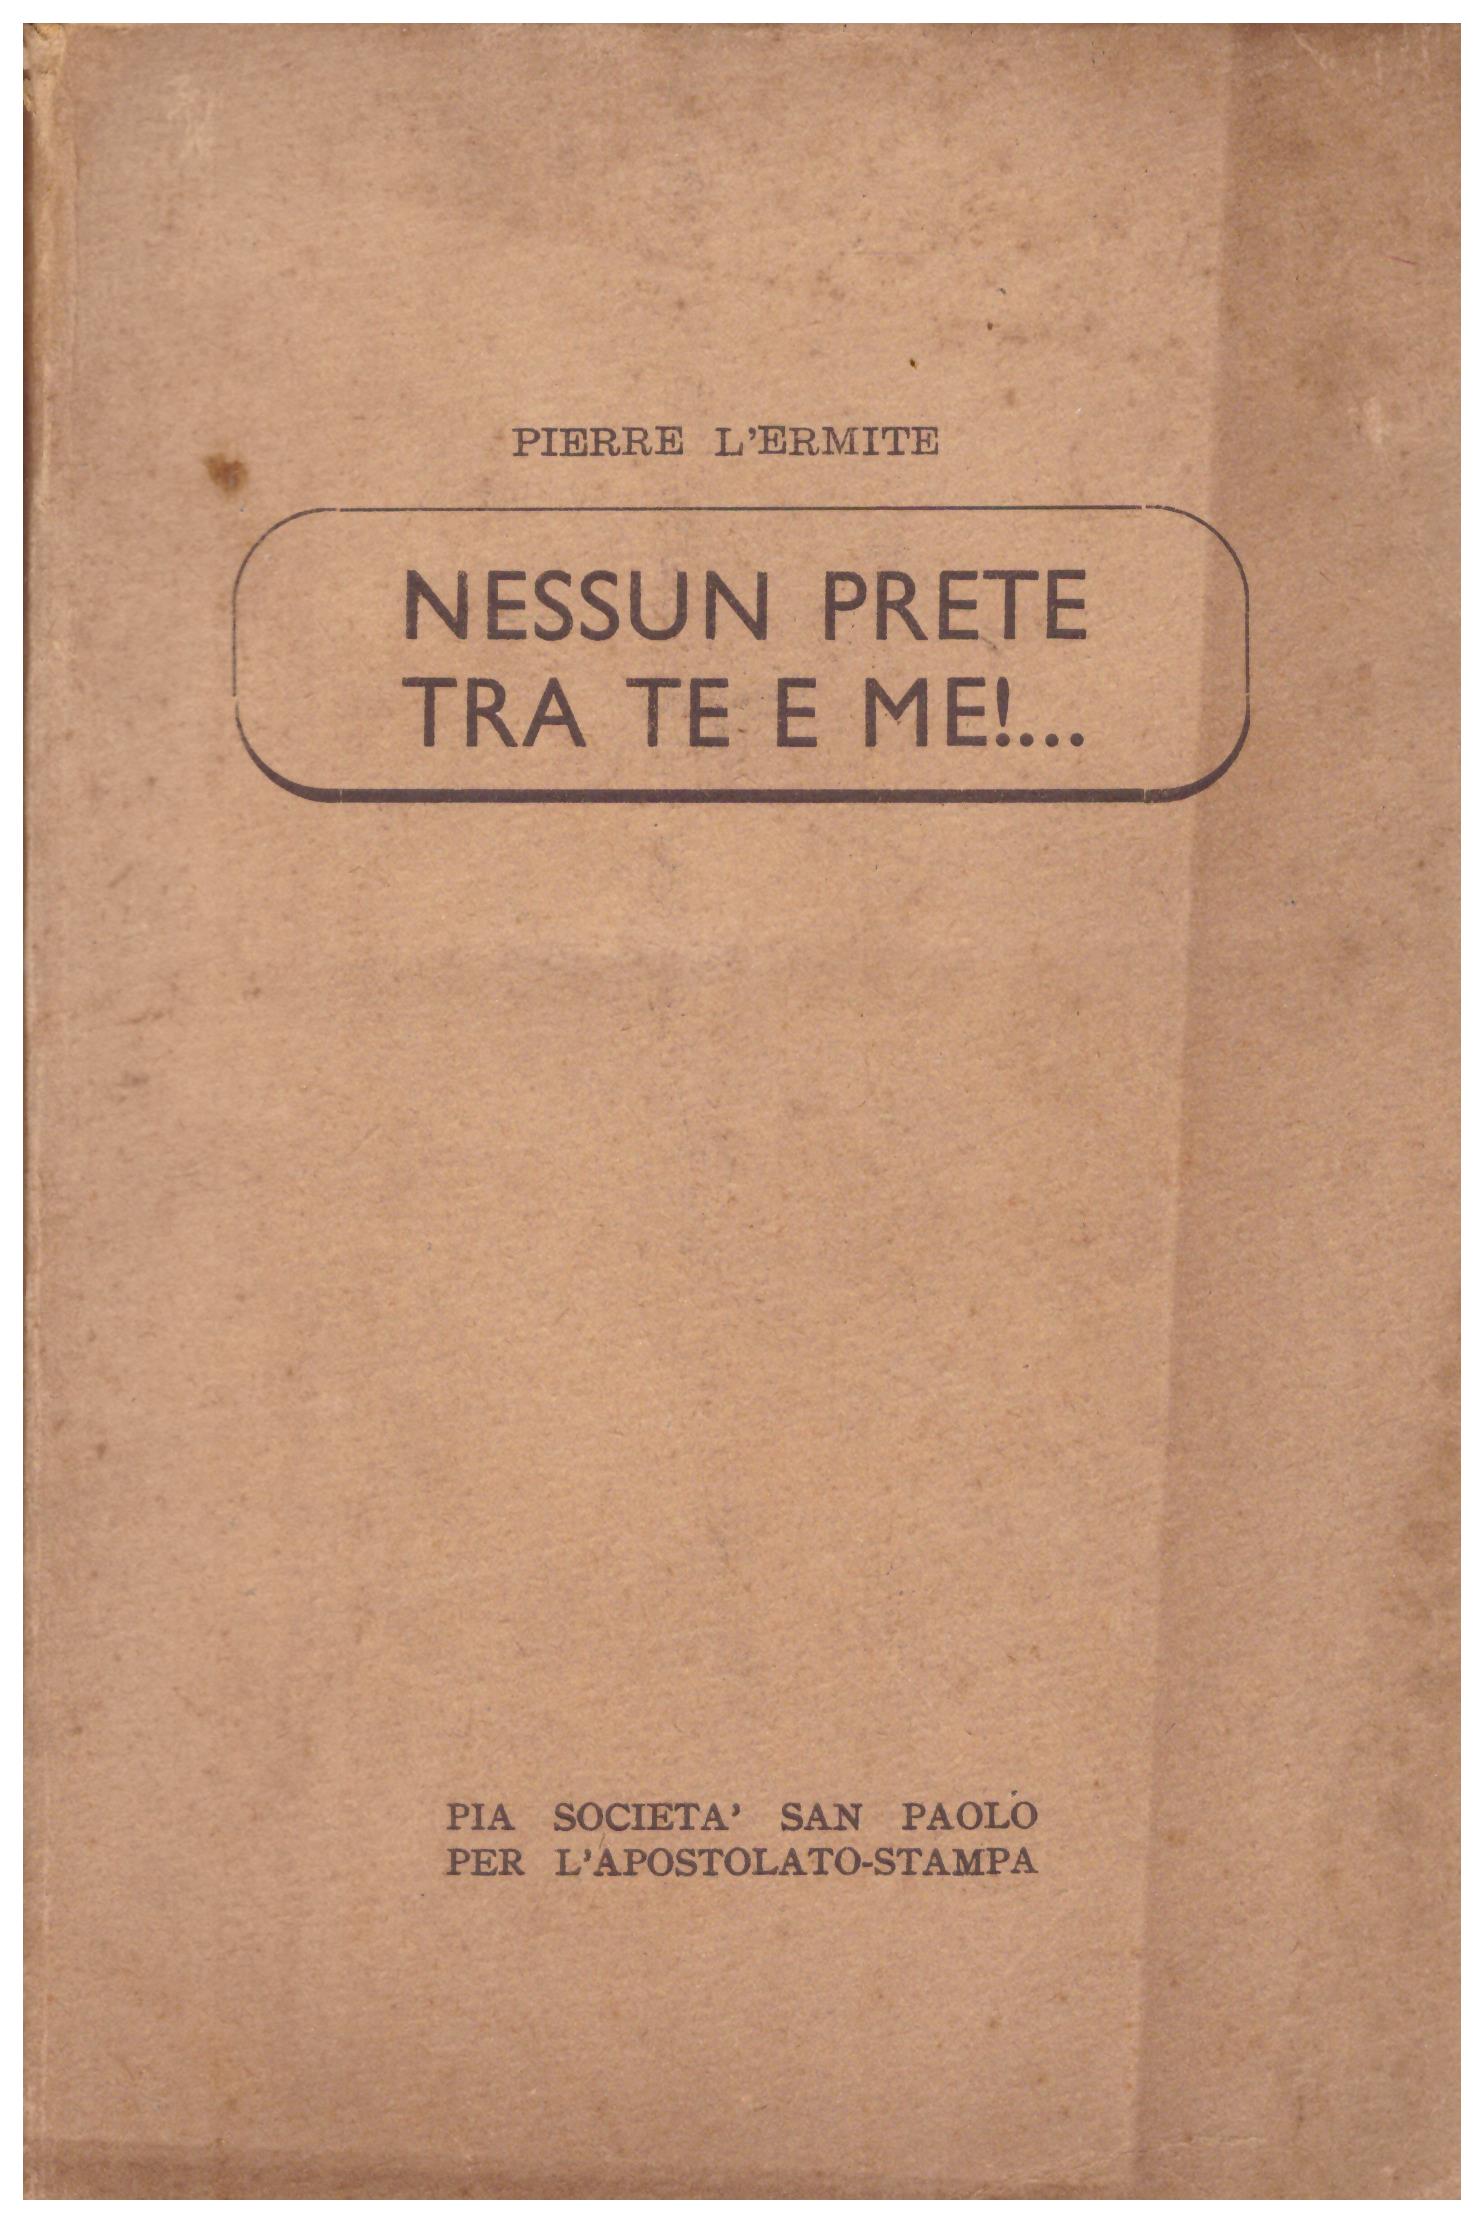 Titolo: Nessun prete tra te e me!  Autore: Pierre L'Ermite  Editore: Pia Società San Paolo Alba, 1938